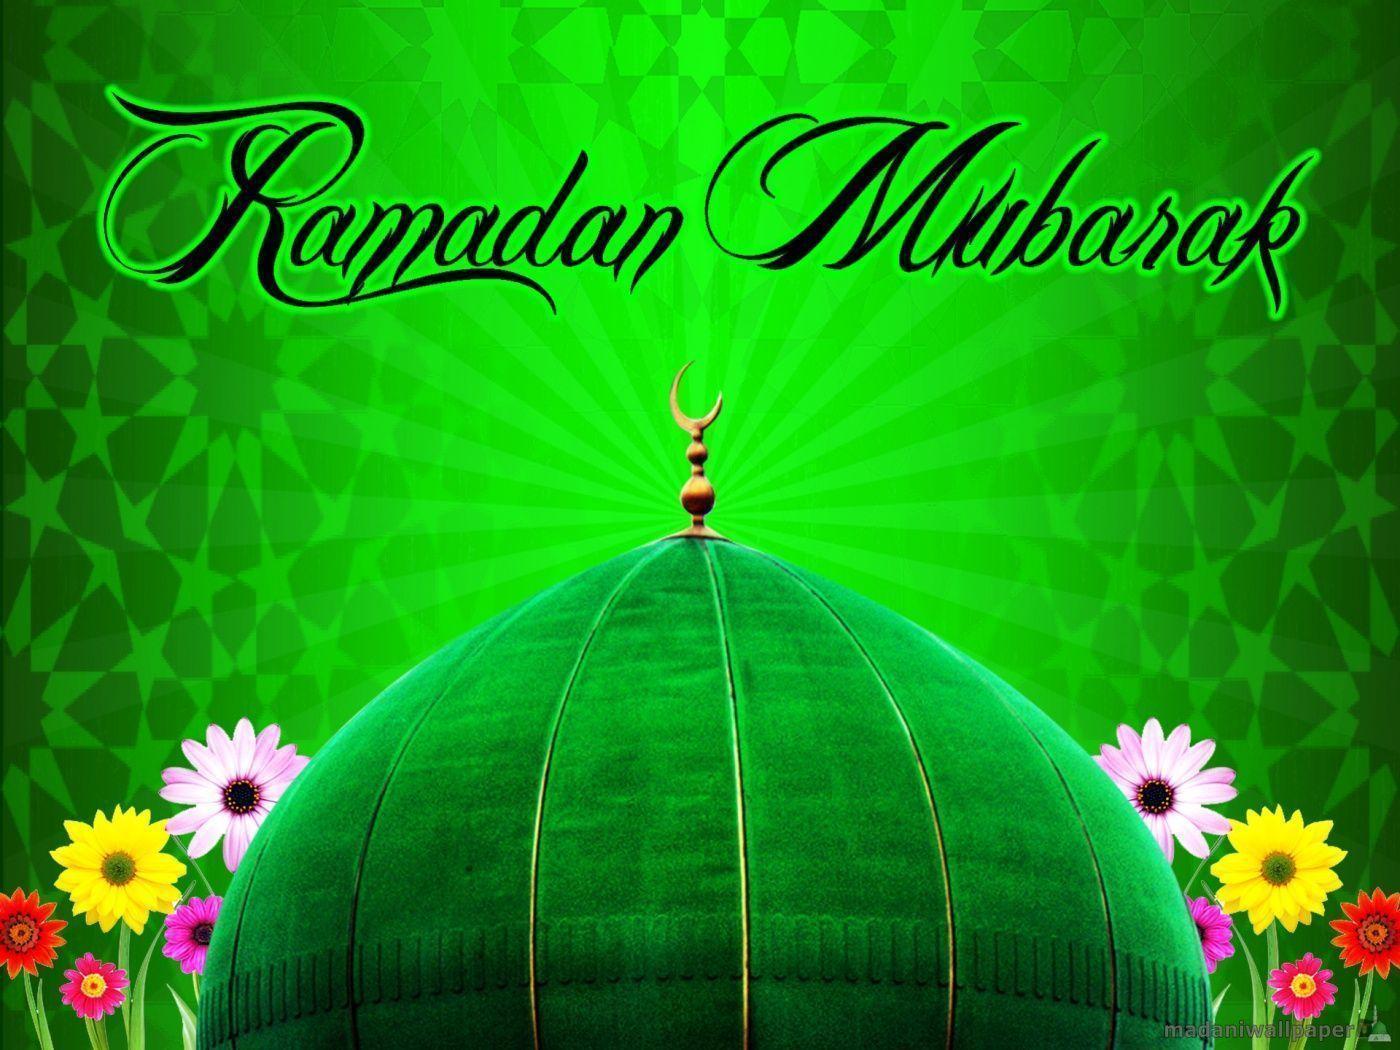 Ramadan wallpaper 2014. Full HD Wallpaper